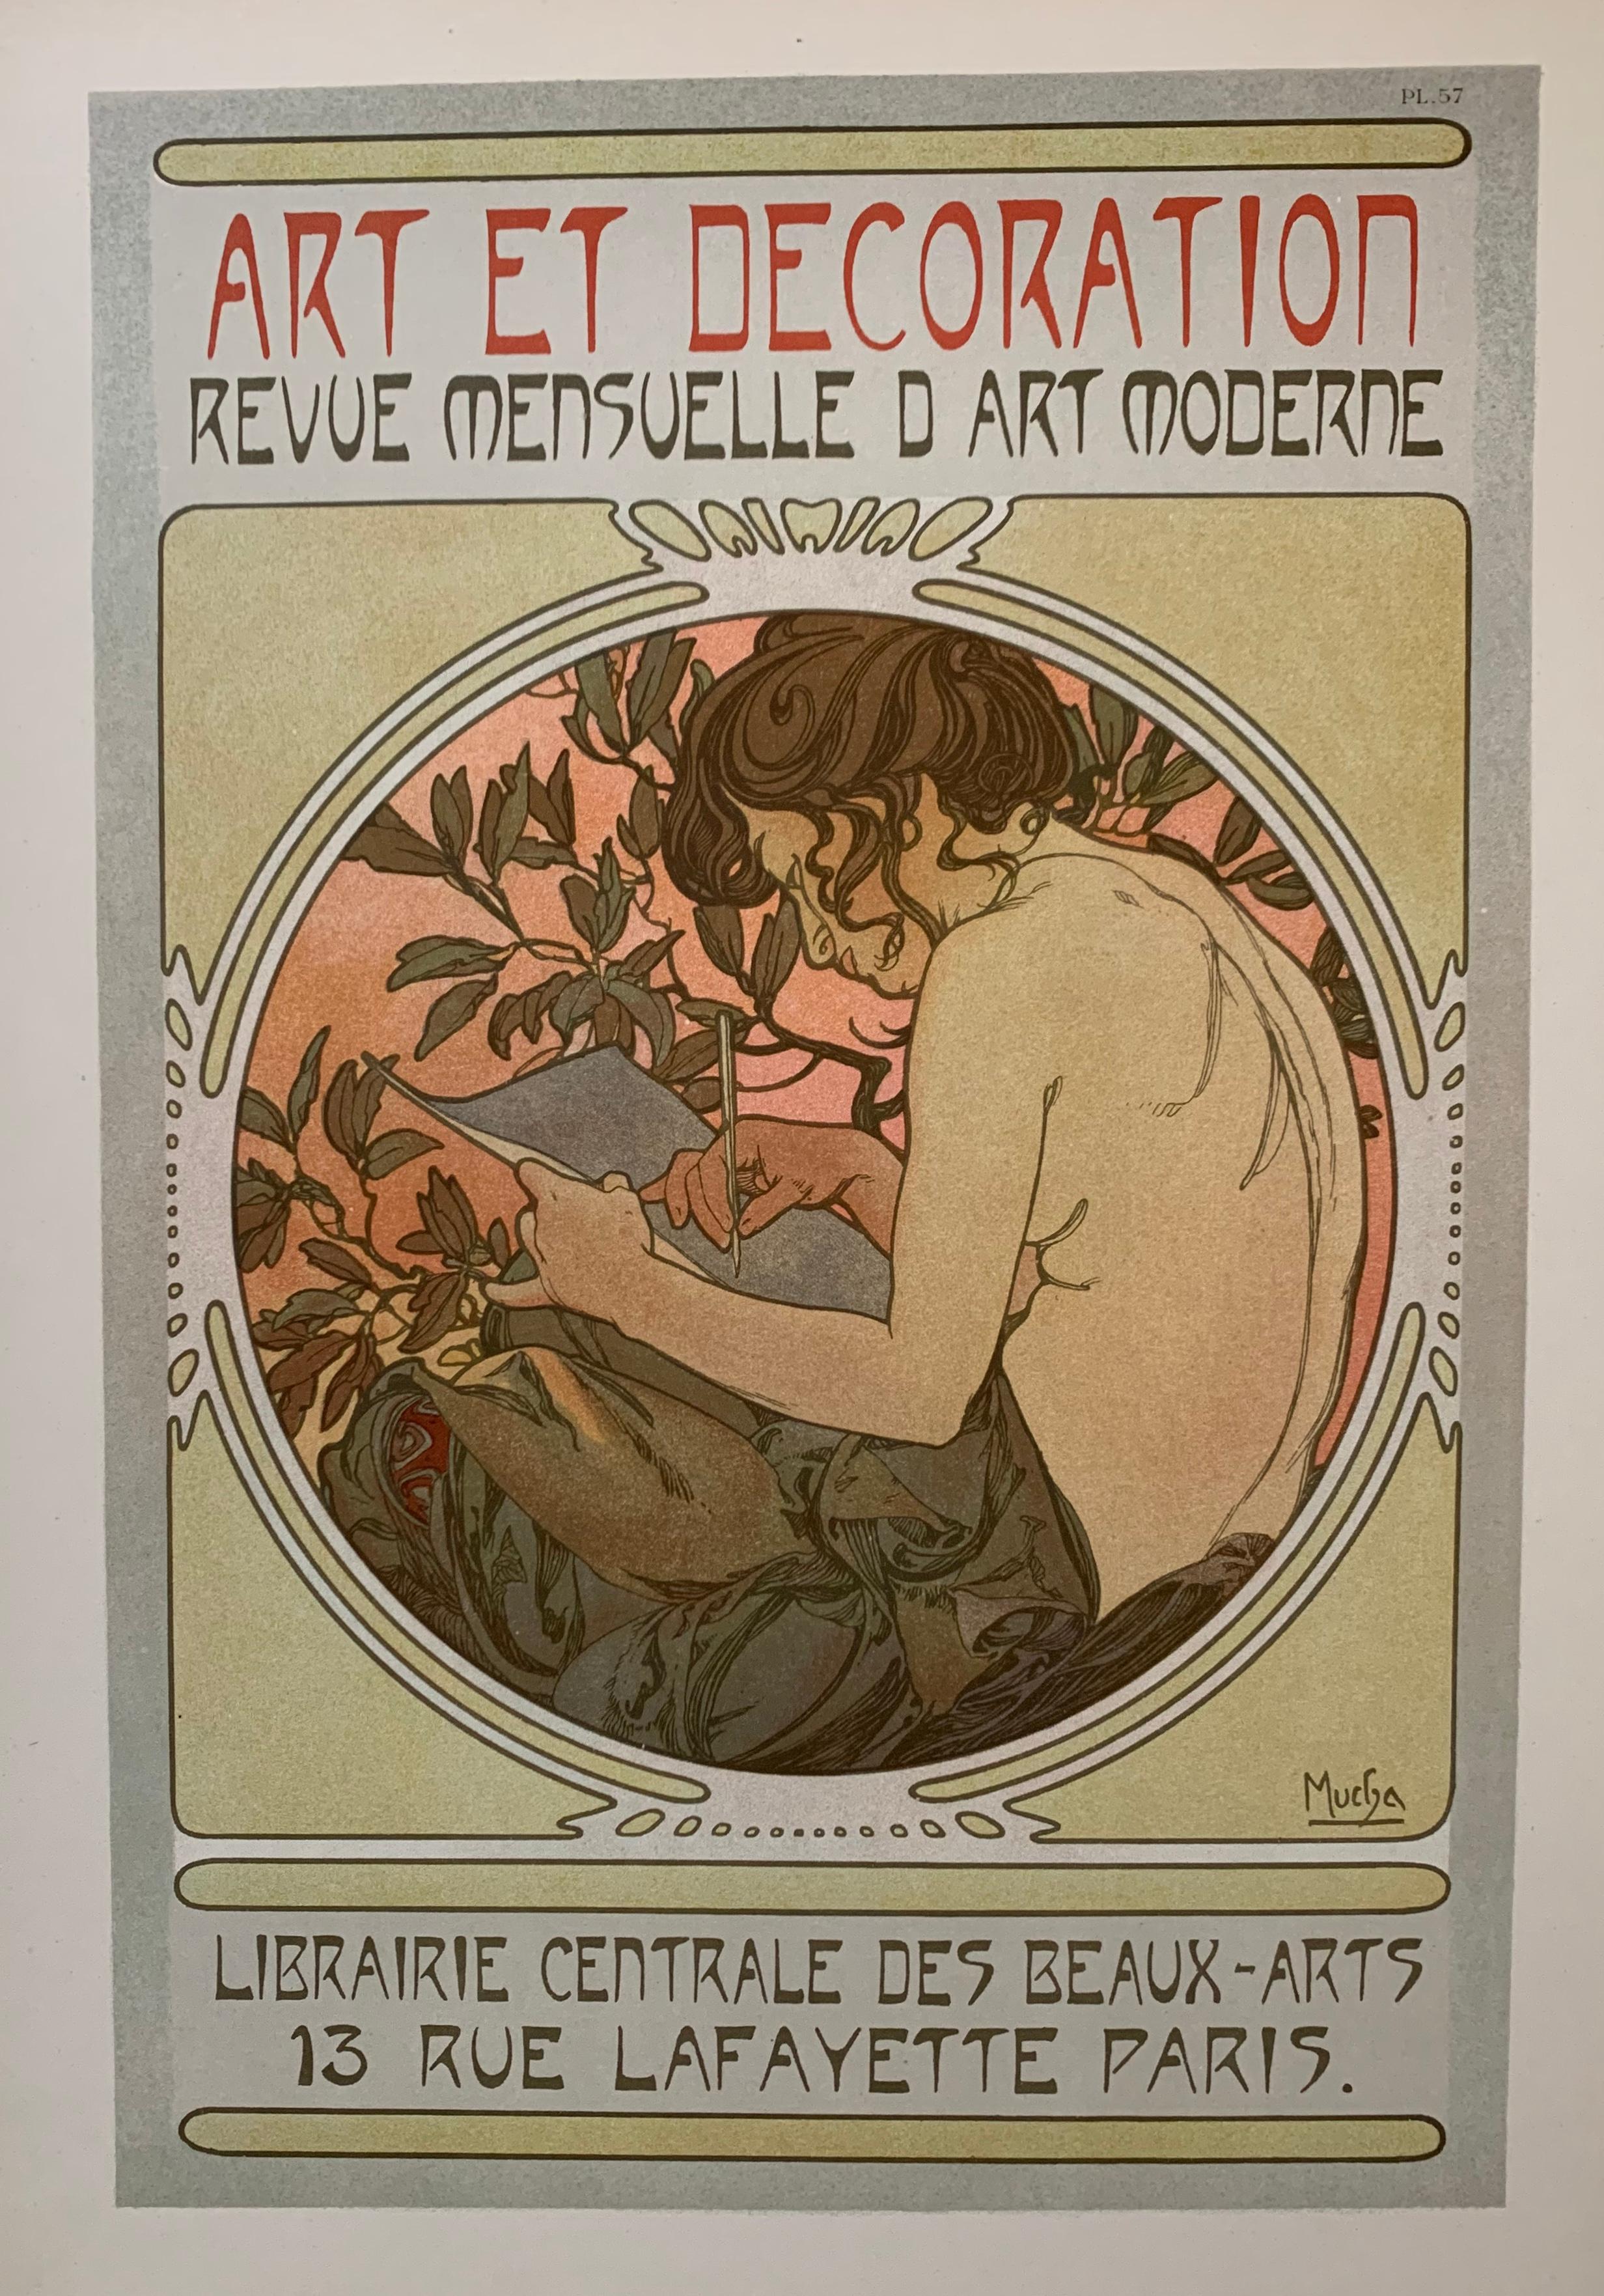 Documents Décoratives- complete - Art Nouveau Print by Alphonse Mucha